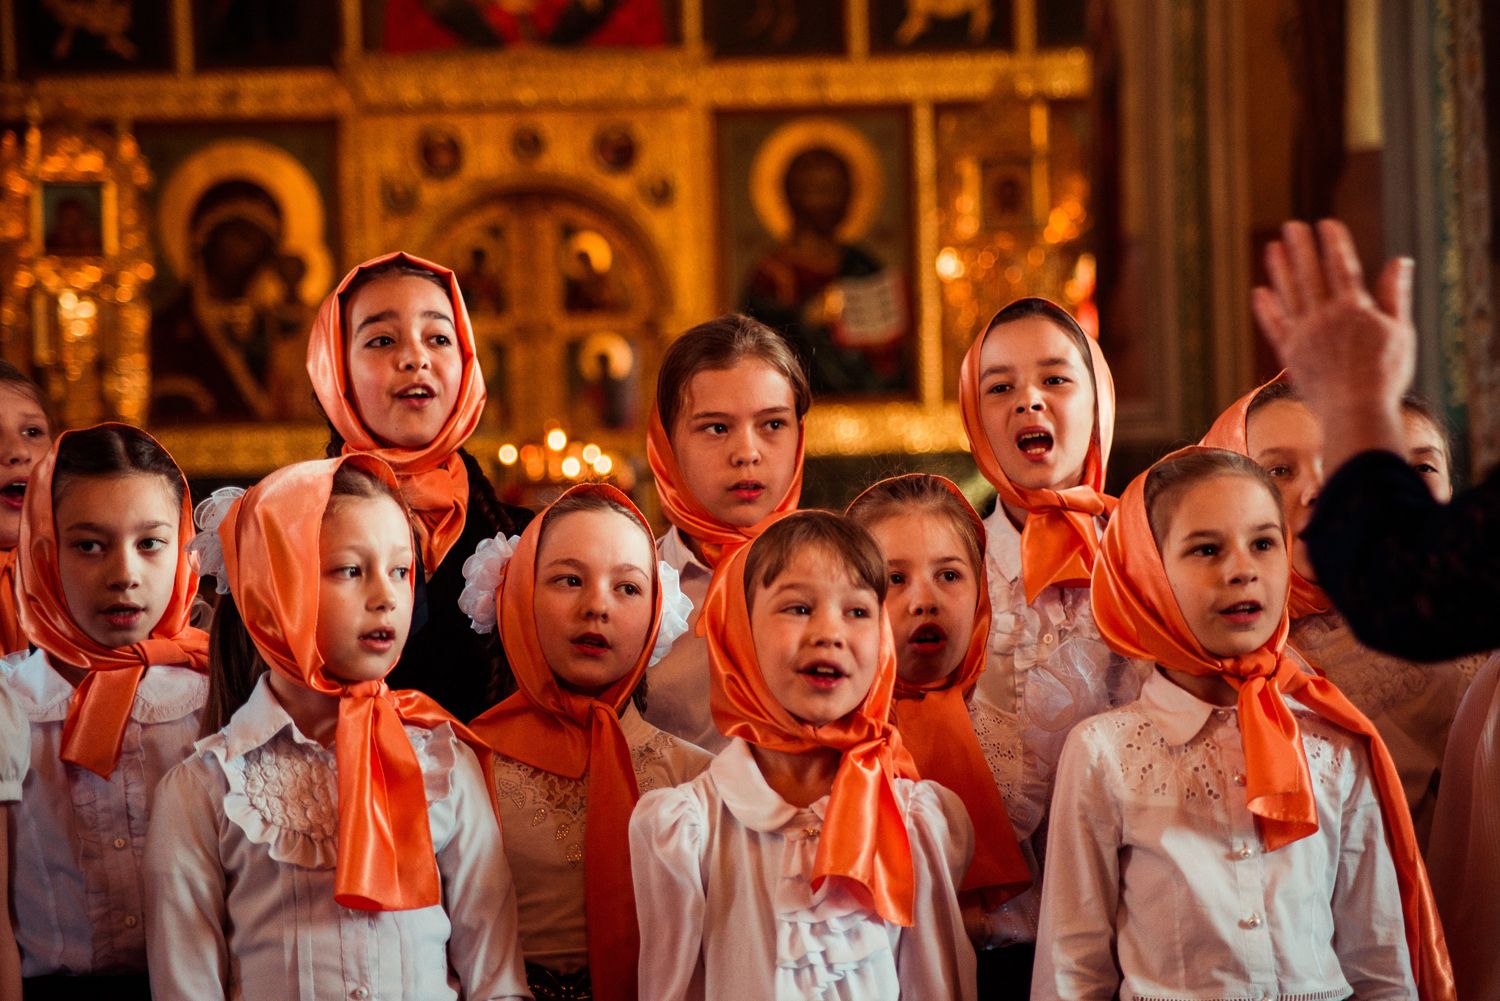 Песни православных петь